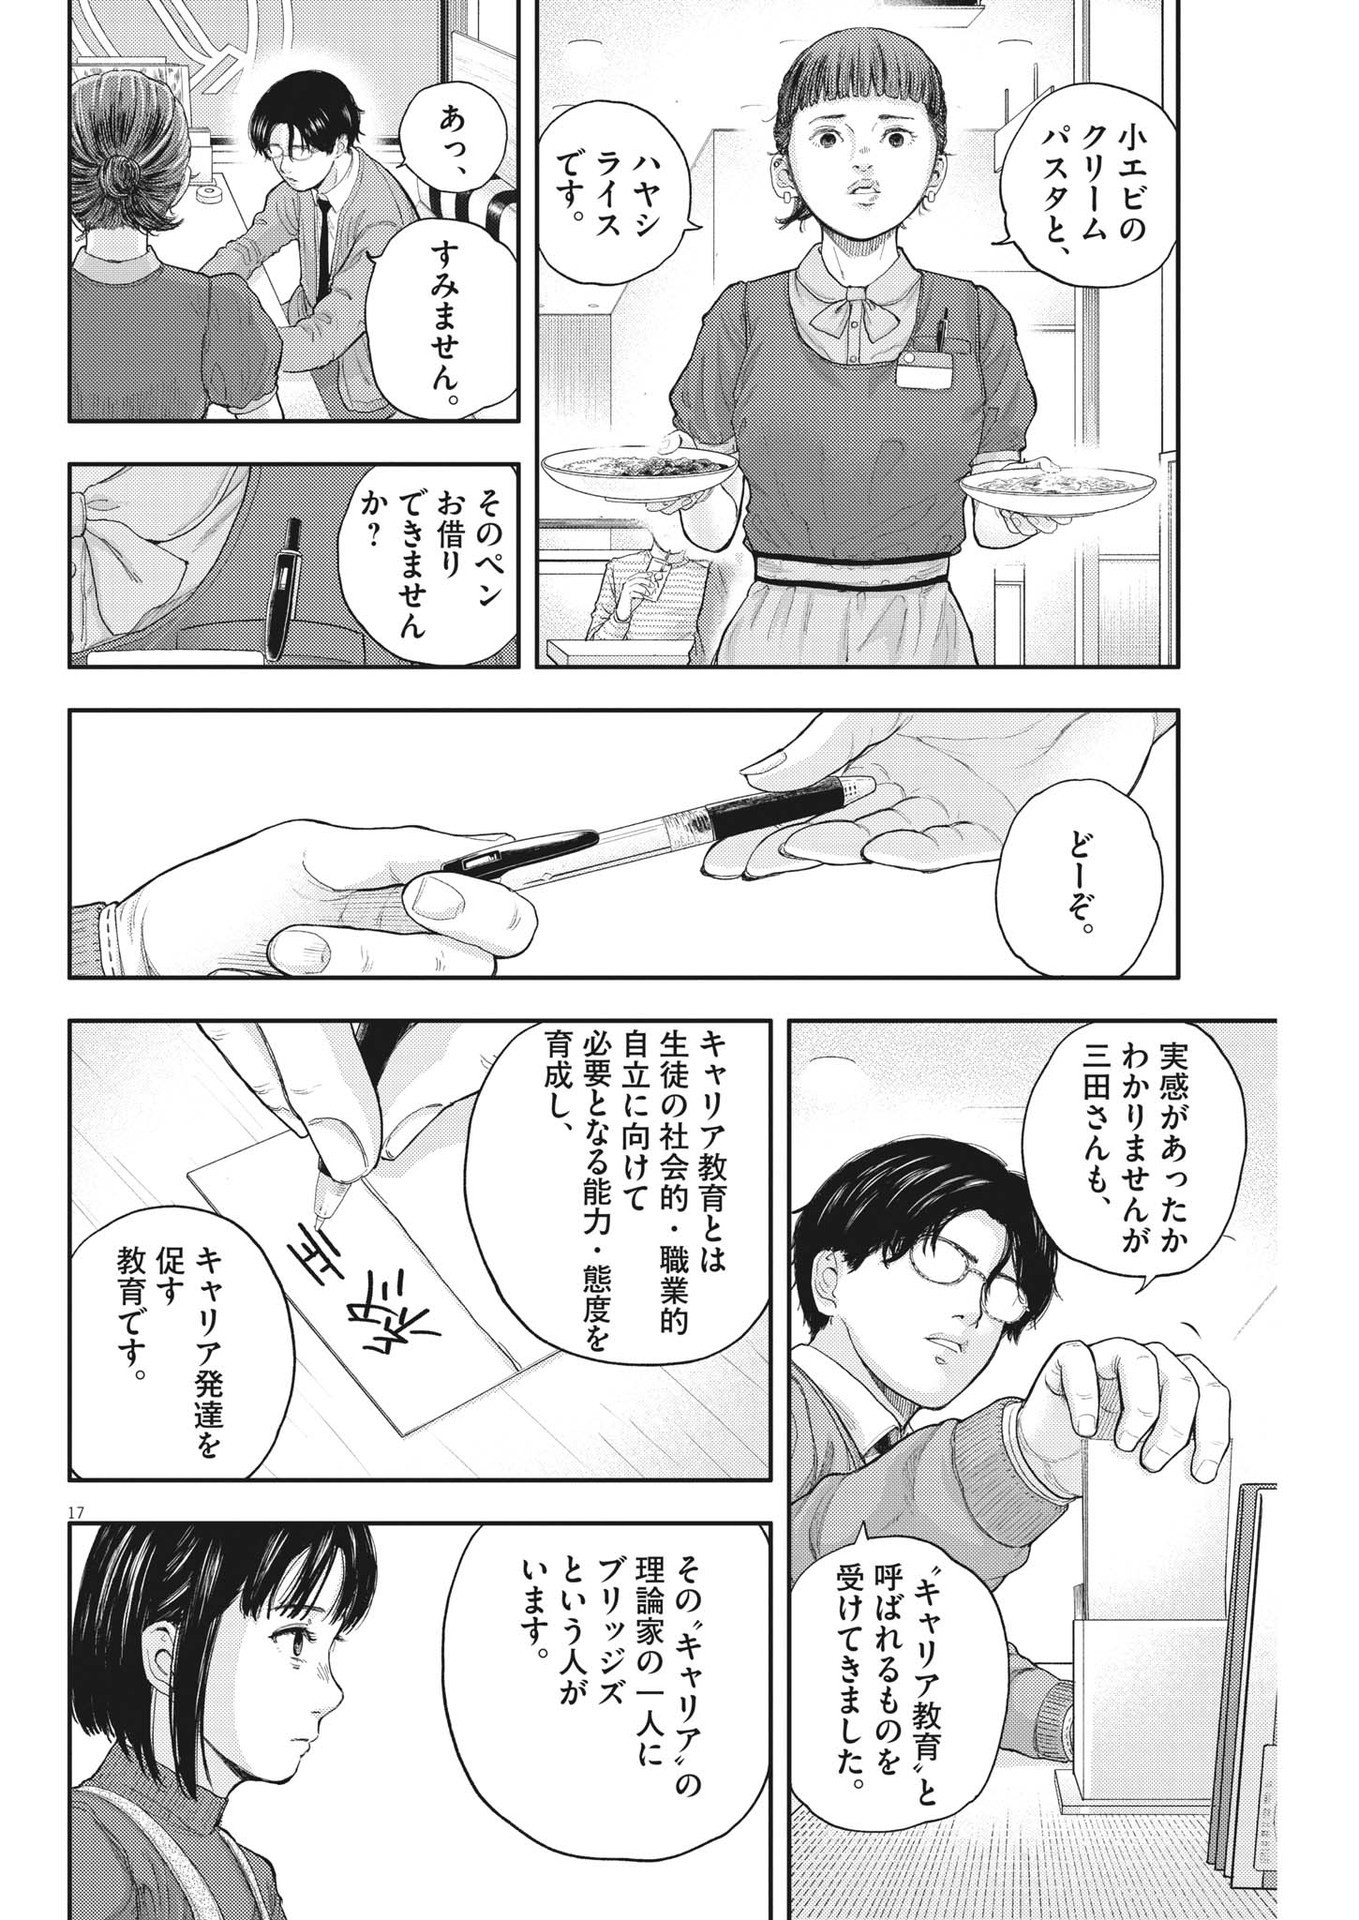 Yumenashi-sensei no Shinroshidou - Chapter 2 - Page 17